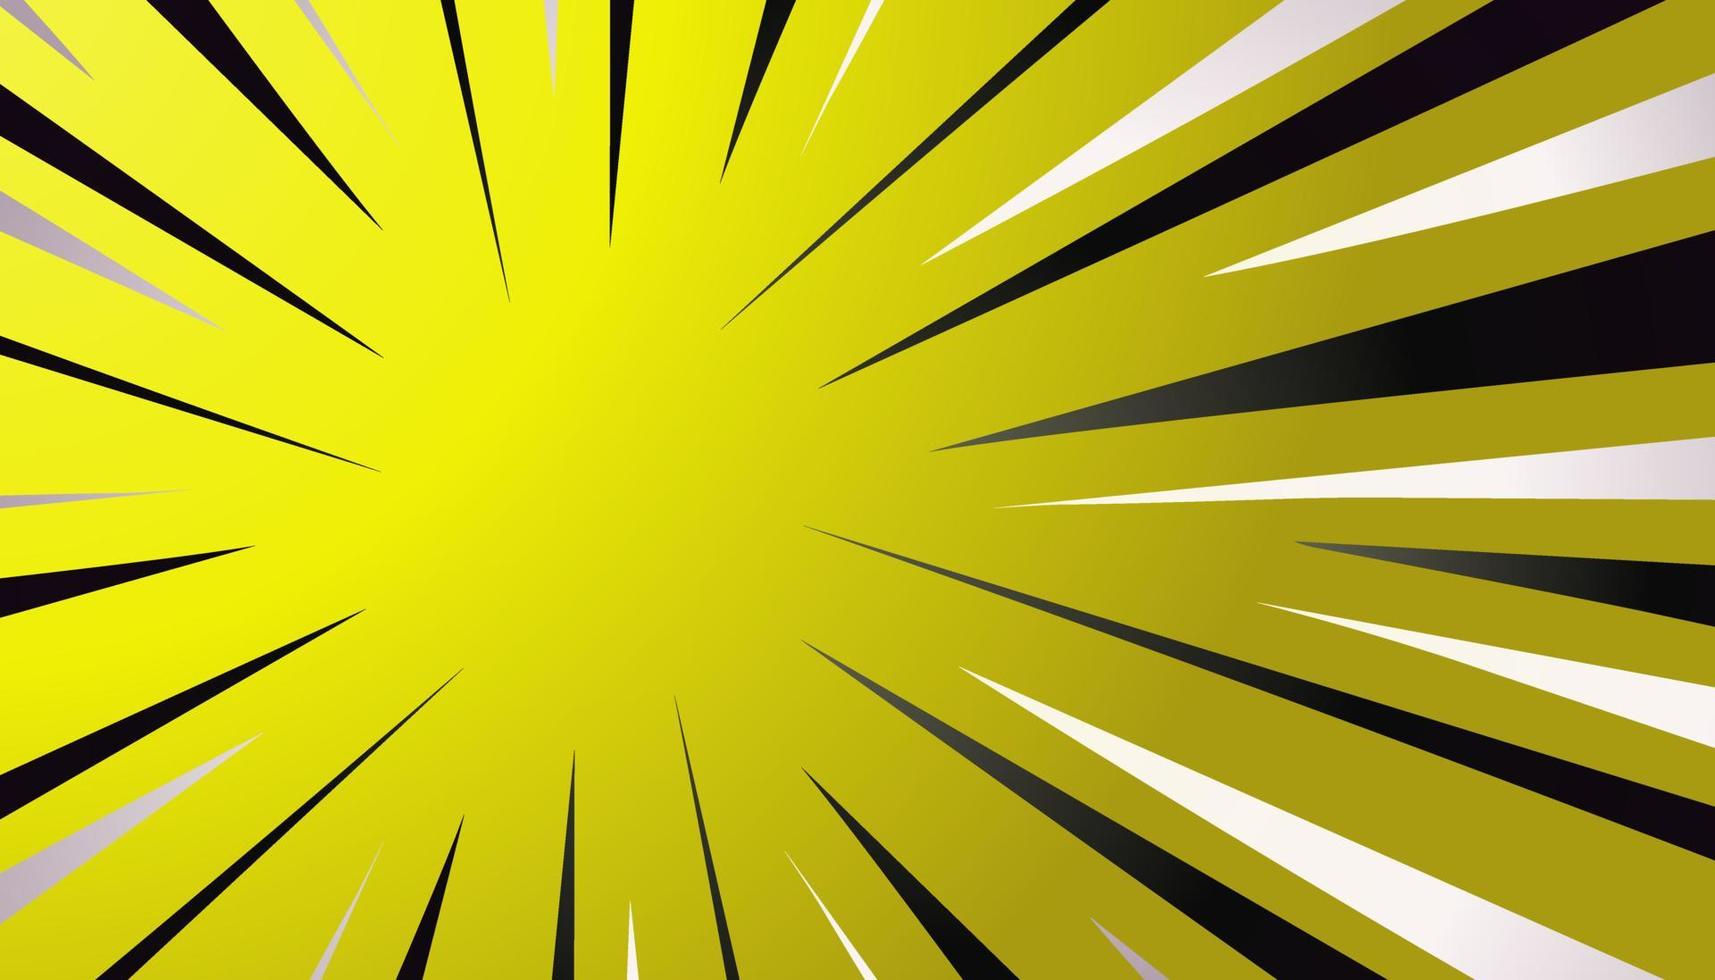 Vektor-Comic-Hintergrund in den Farben Gelb, Schwarz und Weiß vektor